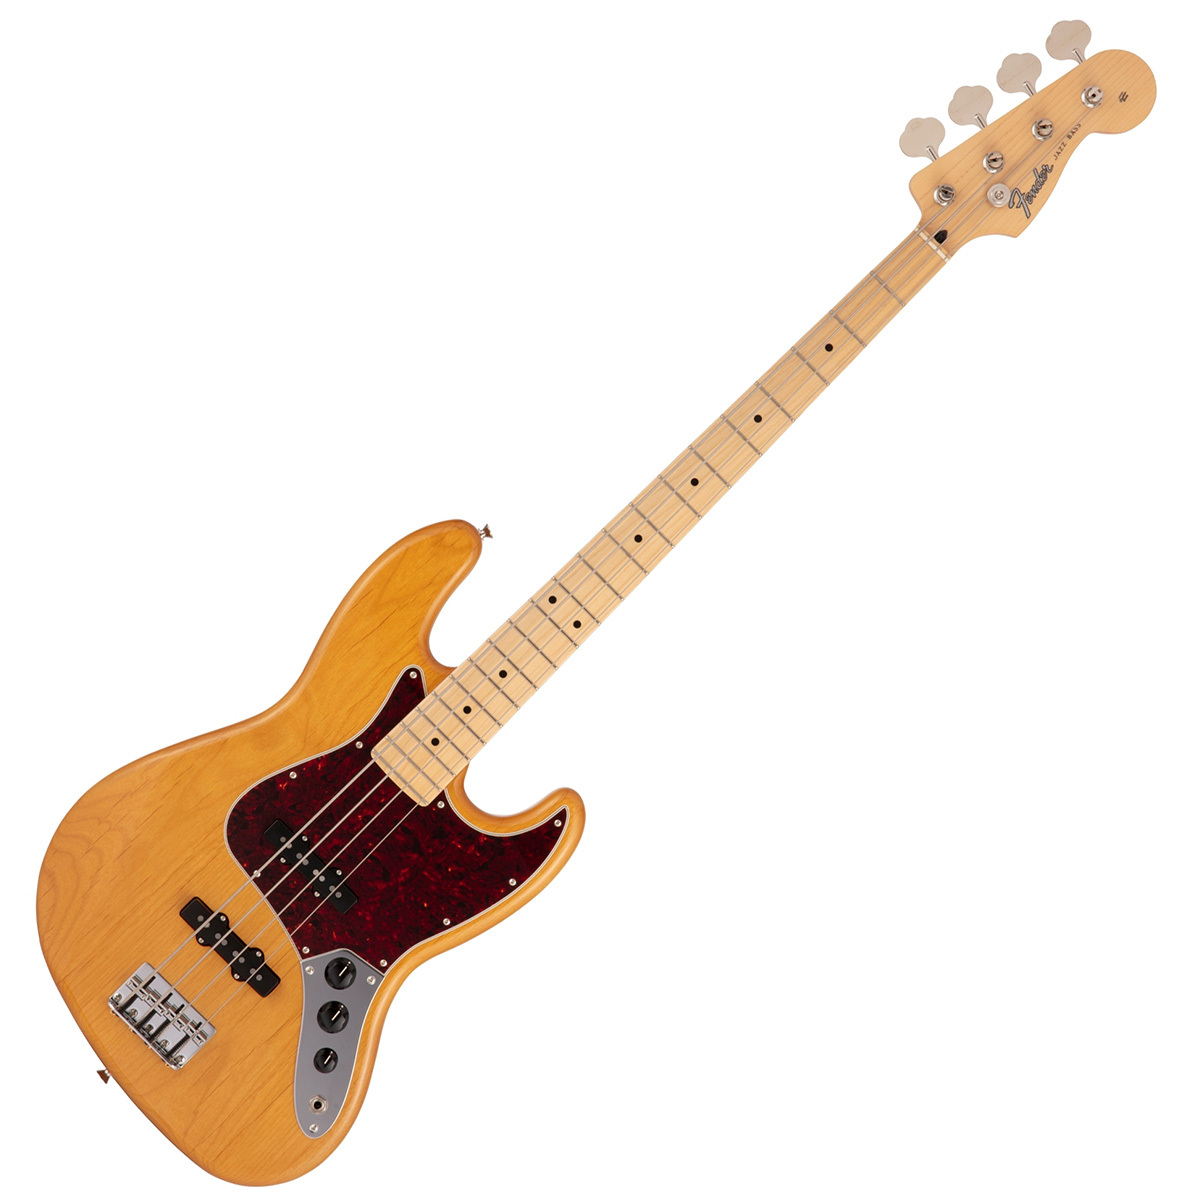 Fender フェンダー Made in Japan Hybrid II Jazz Bass Maple Fingerboard エレキベース  ジャズベース